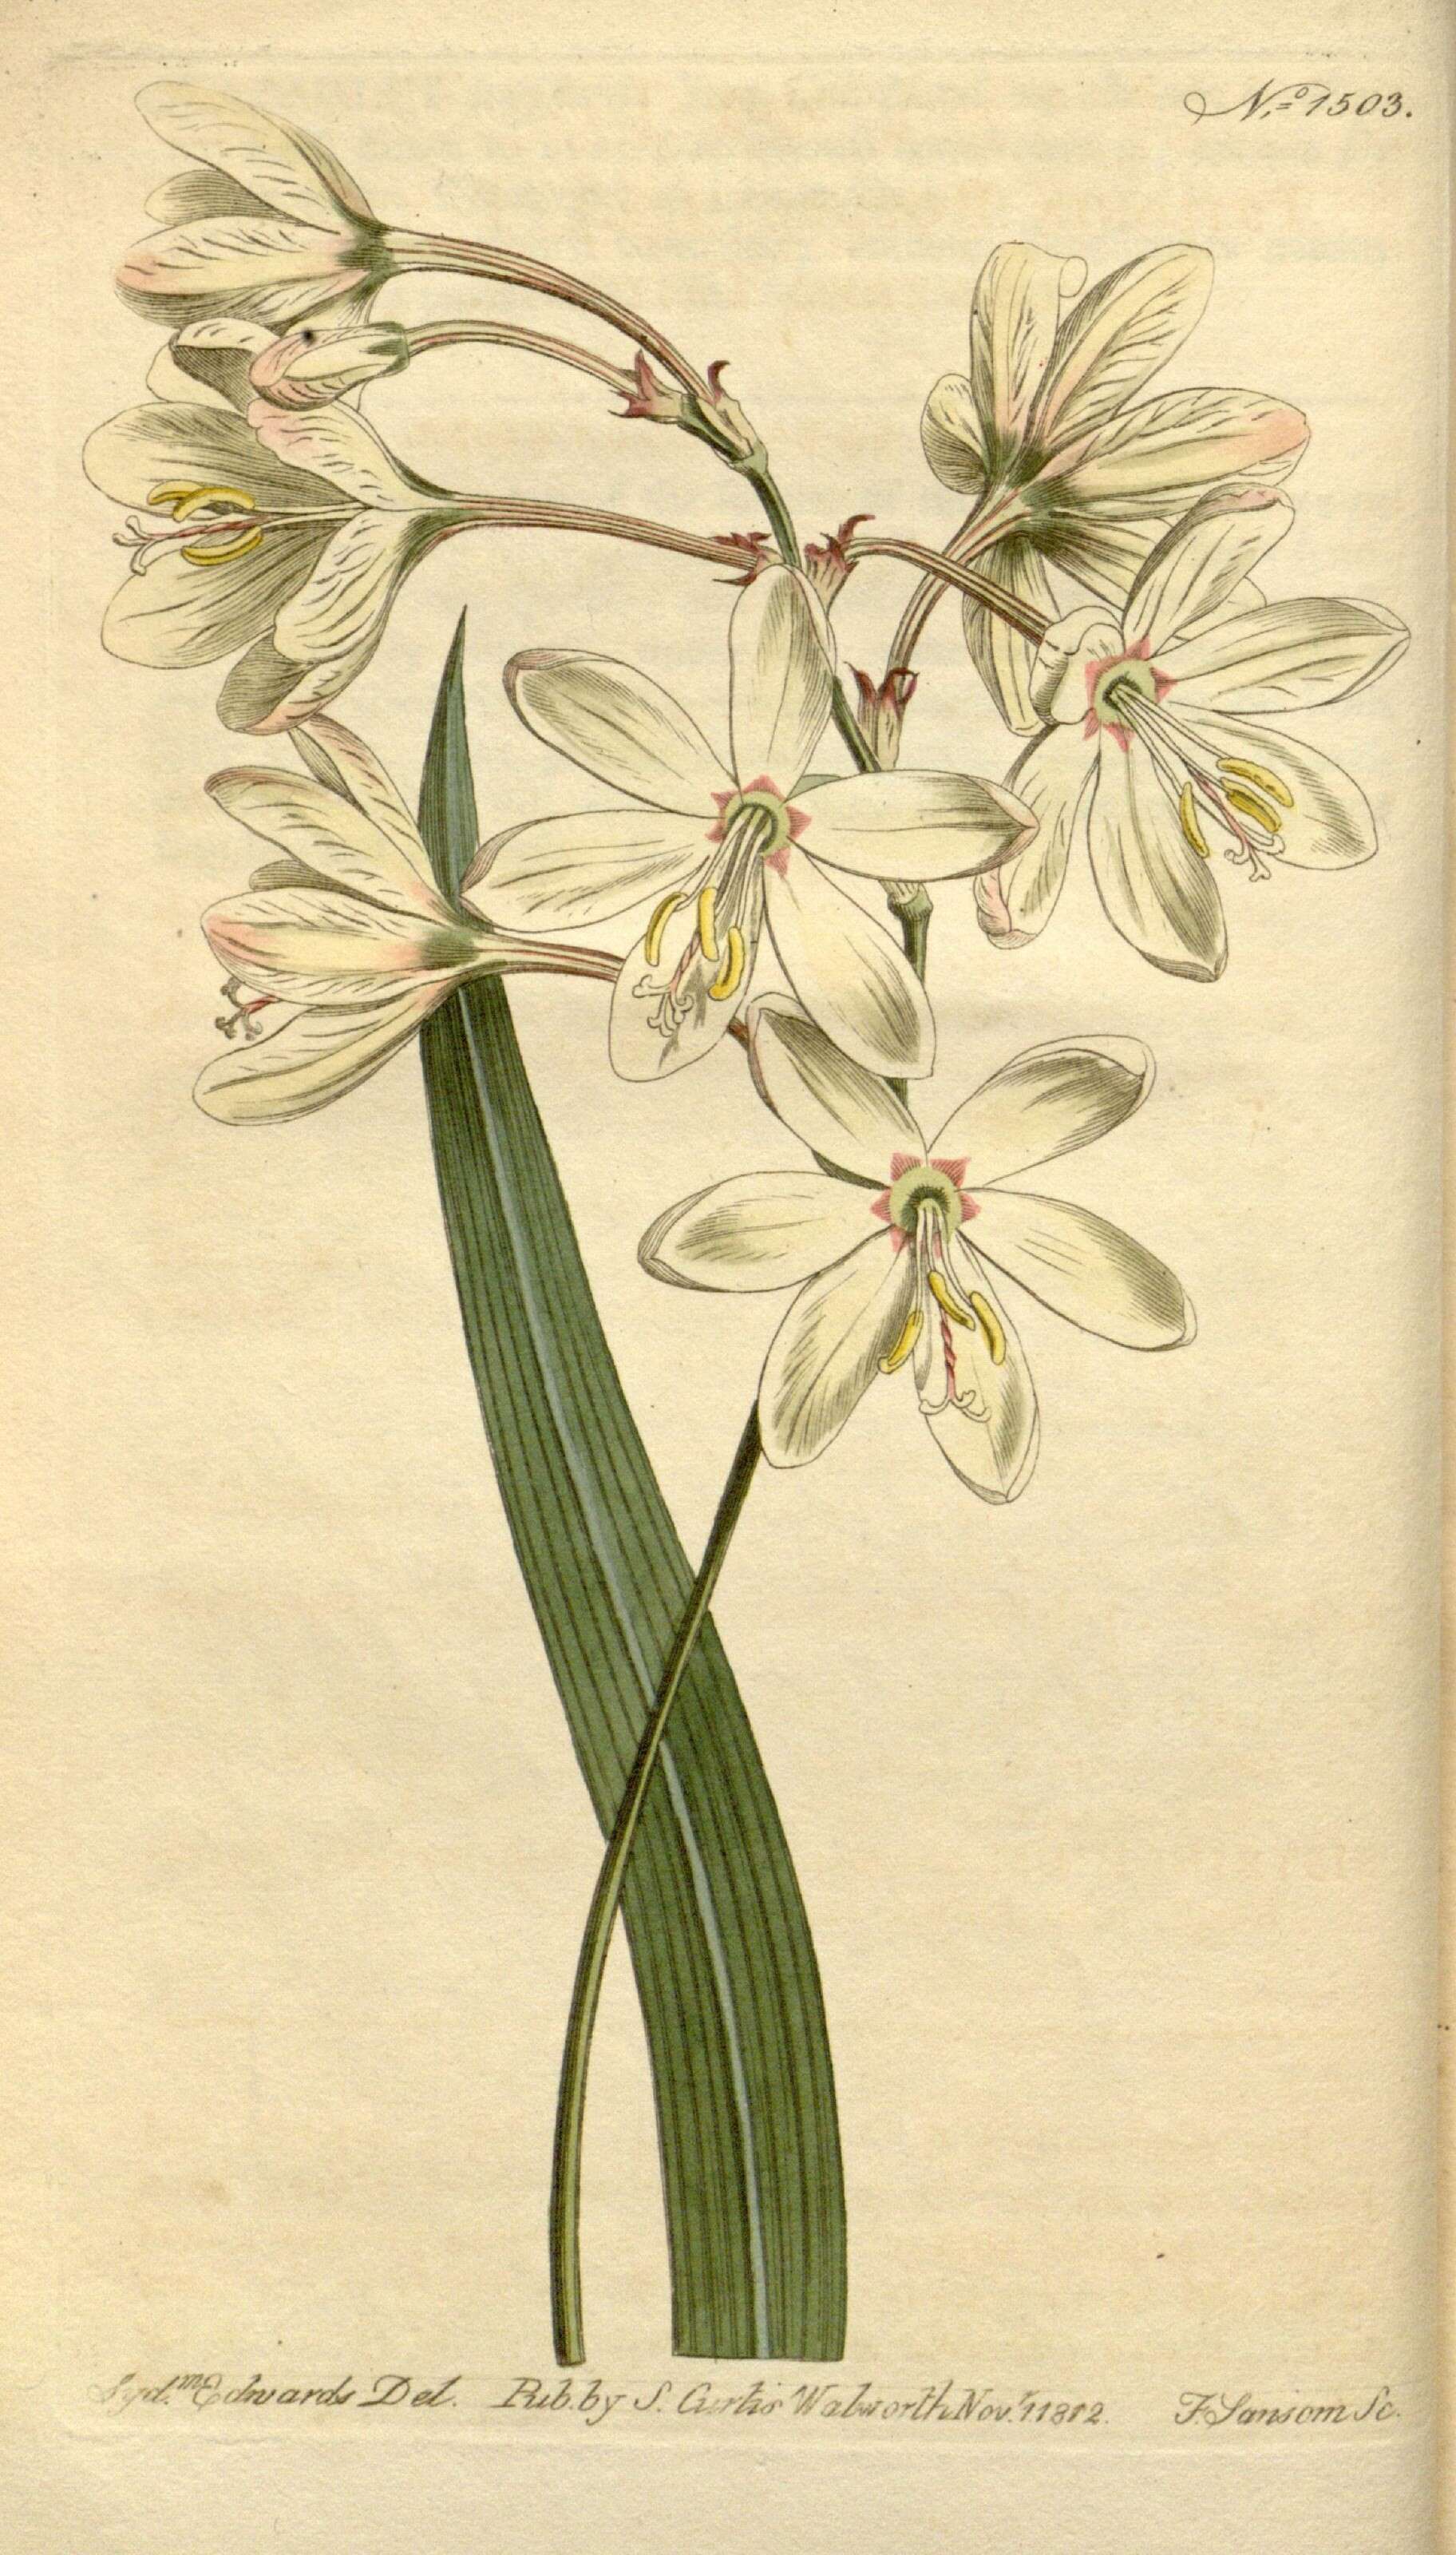 Image of Ixia bellendenii R. C. Foster